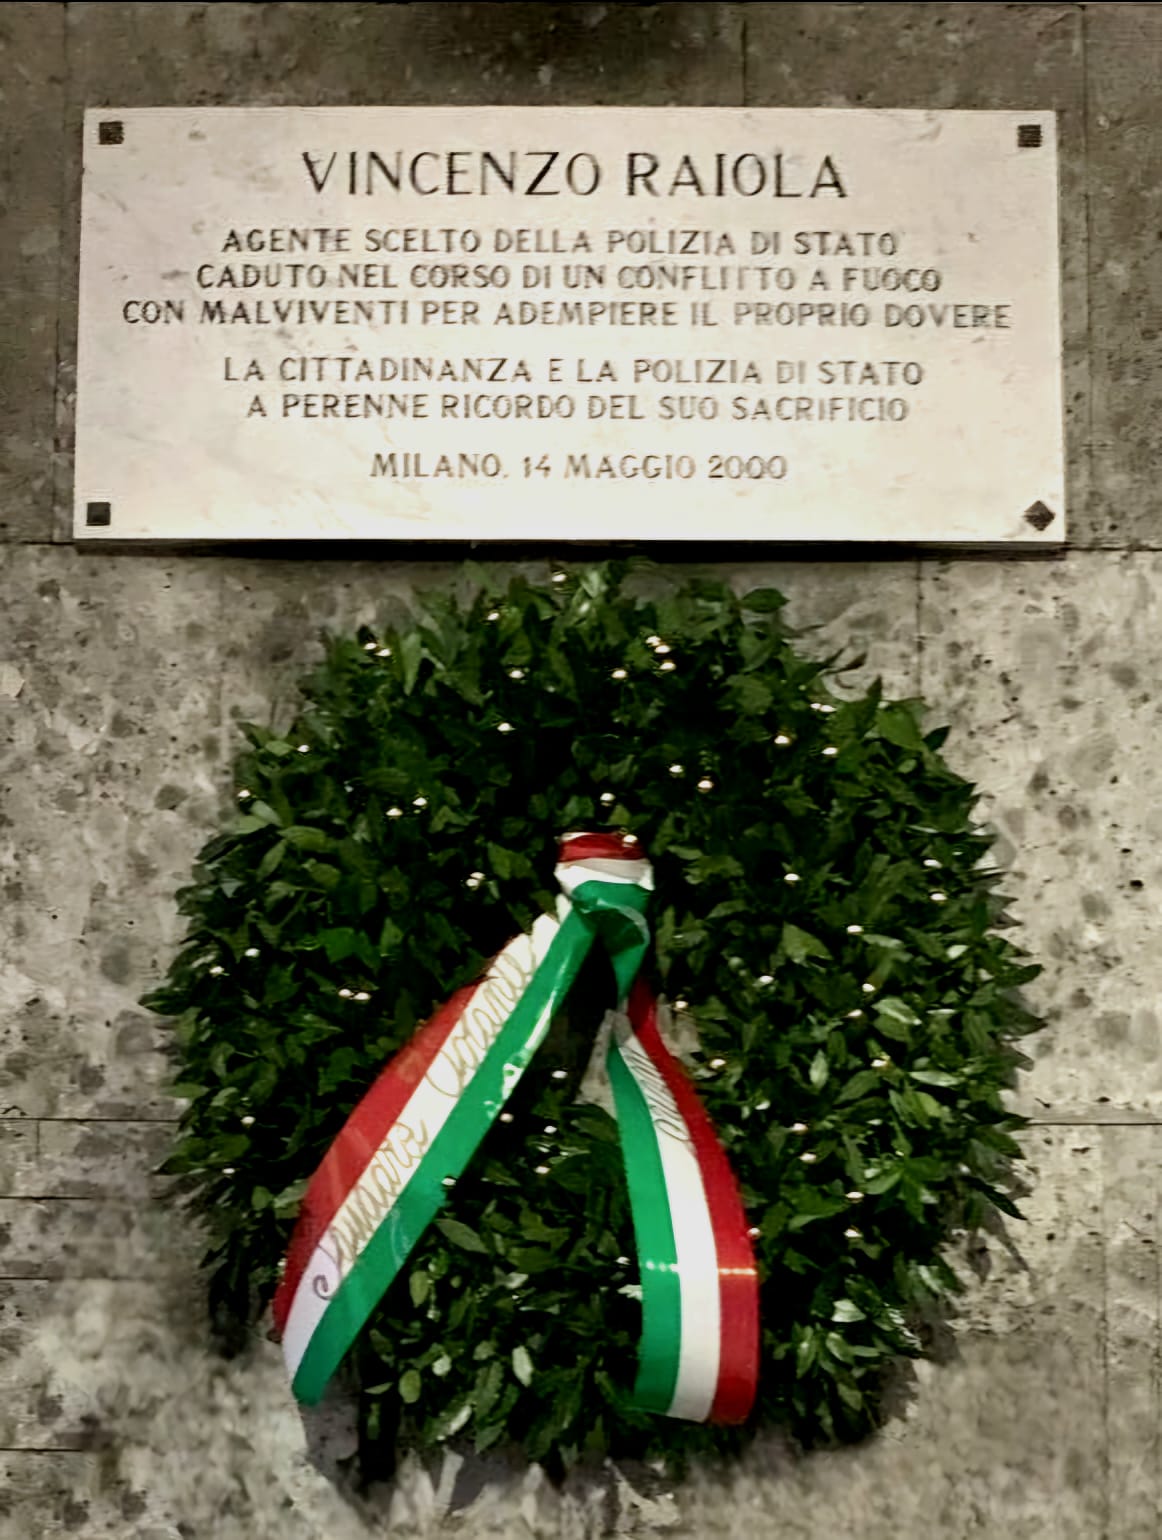 Milano, la Polizia di Stato ricorda Vincenzo Raiola nel 25esimo anniversario della scomparsa